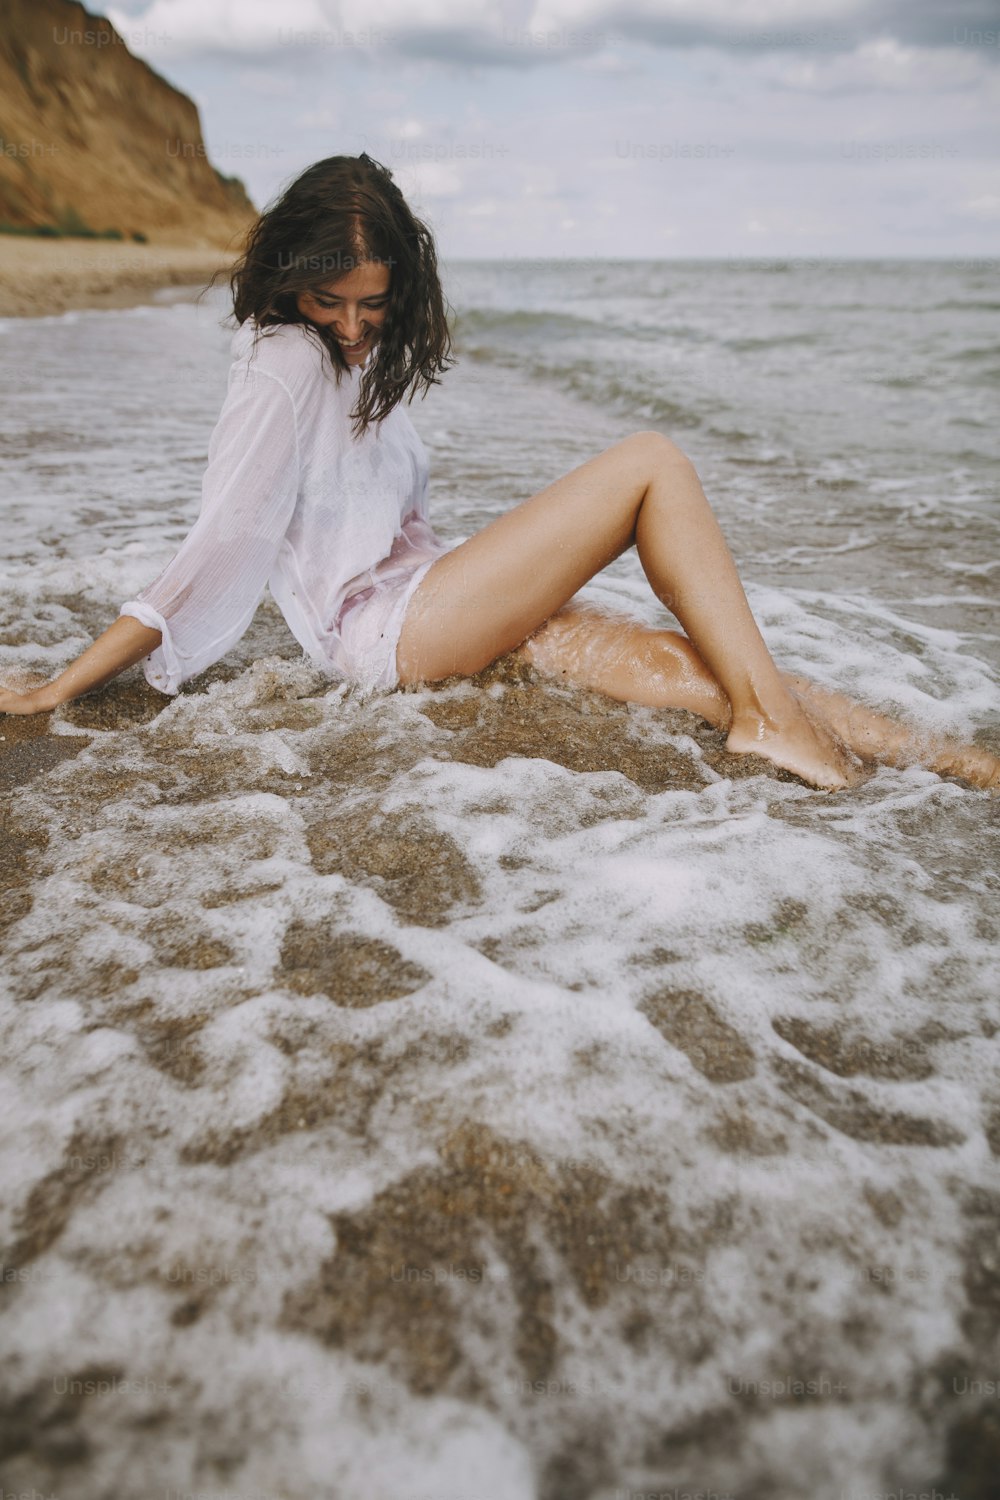 하얀 셔츠를 입은 행복한 여자가 튀는 파도에 해변에 앉아 있다. 해변에서 휴식을 취하고 파도를 즐기는 세련된 검게 그을린 소녀. 여름 방학. 마음 챙김과 평온한 순간